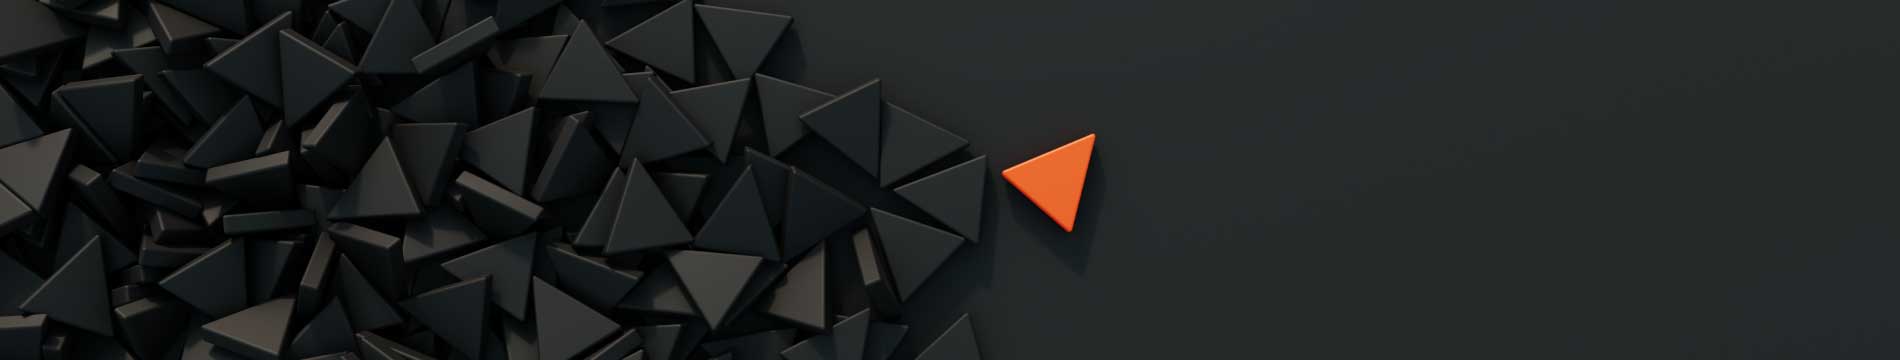 MCM2 | Digital Marketing Agency Nantwich | Orange triangle